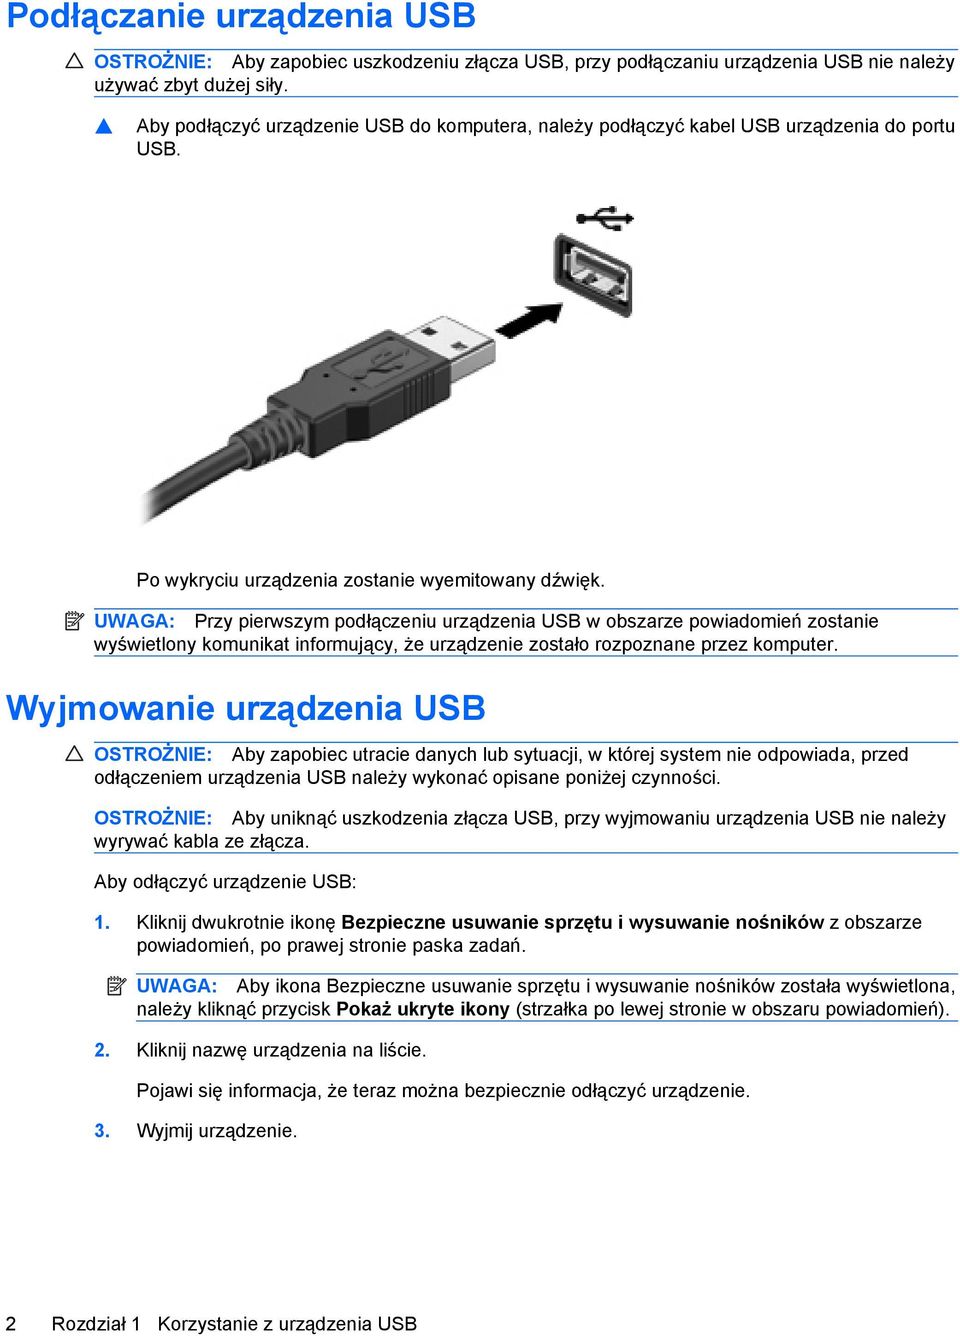 UWAGA: Przy pierwszym podłączeniu urządzenia USB w obszarze powiadomień zostanie wyświetlony komunikat informujący, że urządzenie zostało rozpoznane przez komputer.